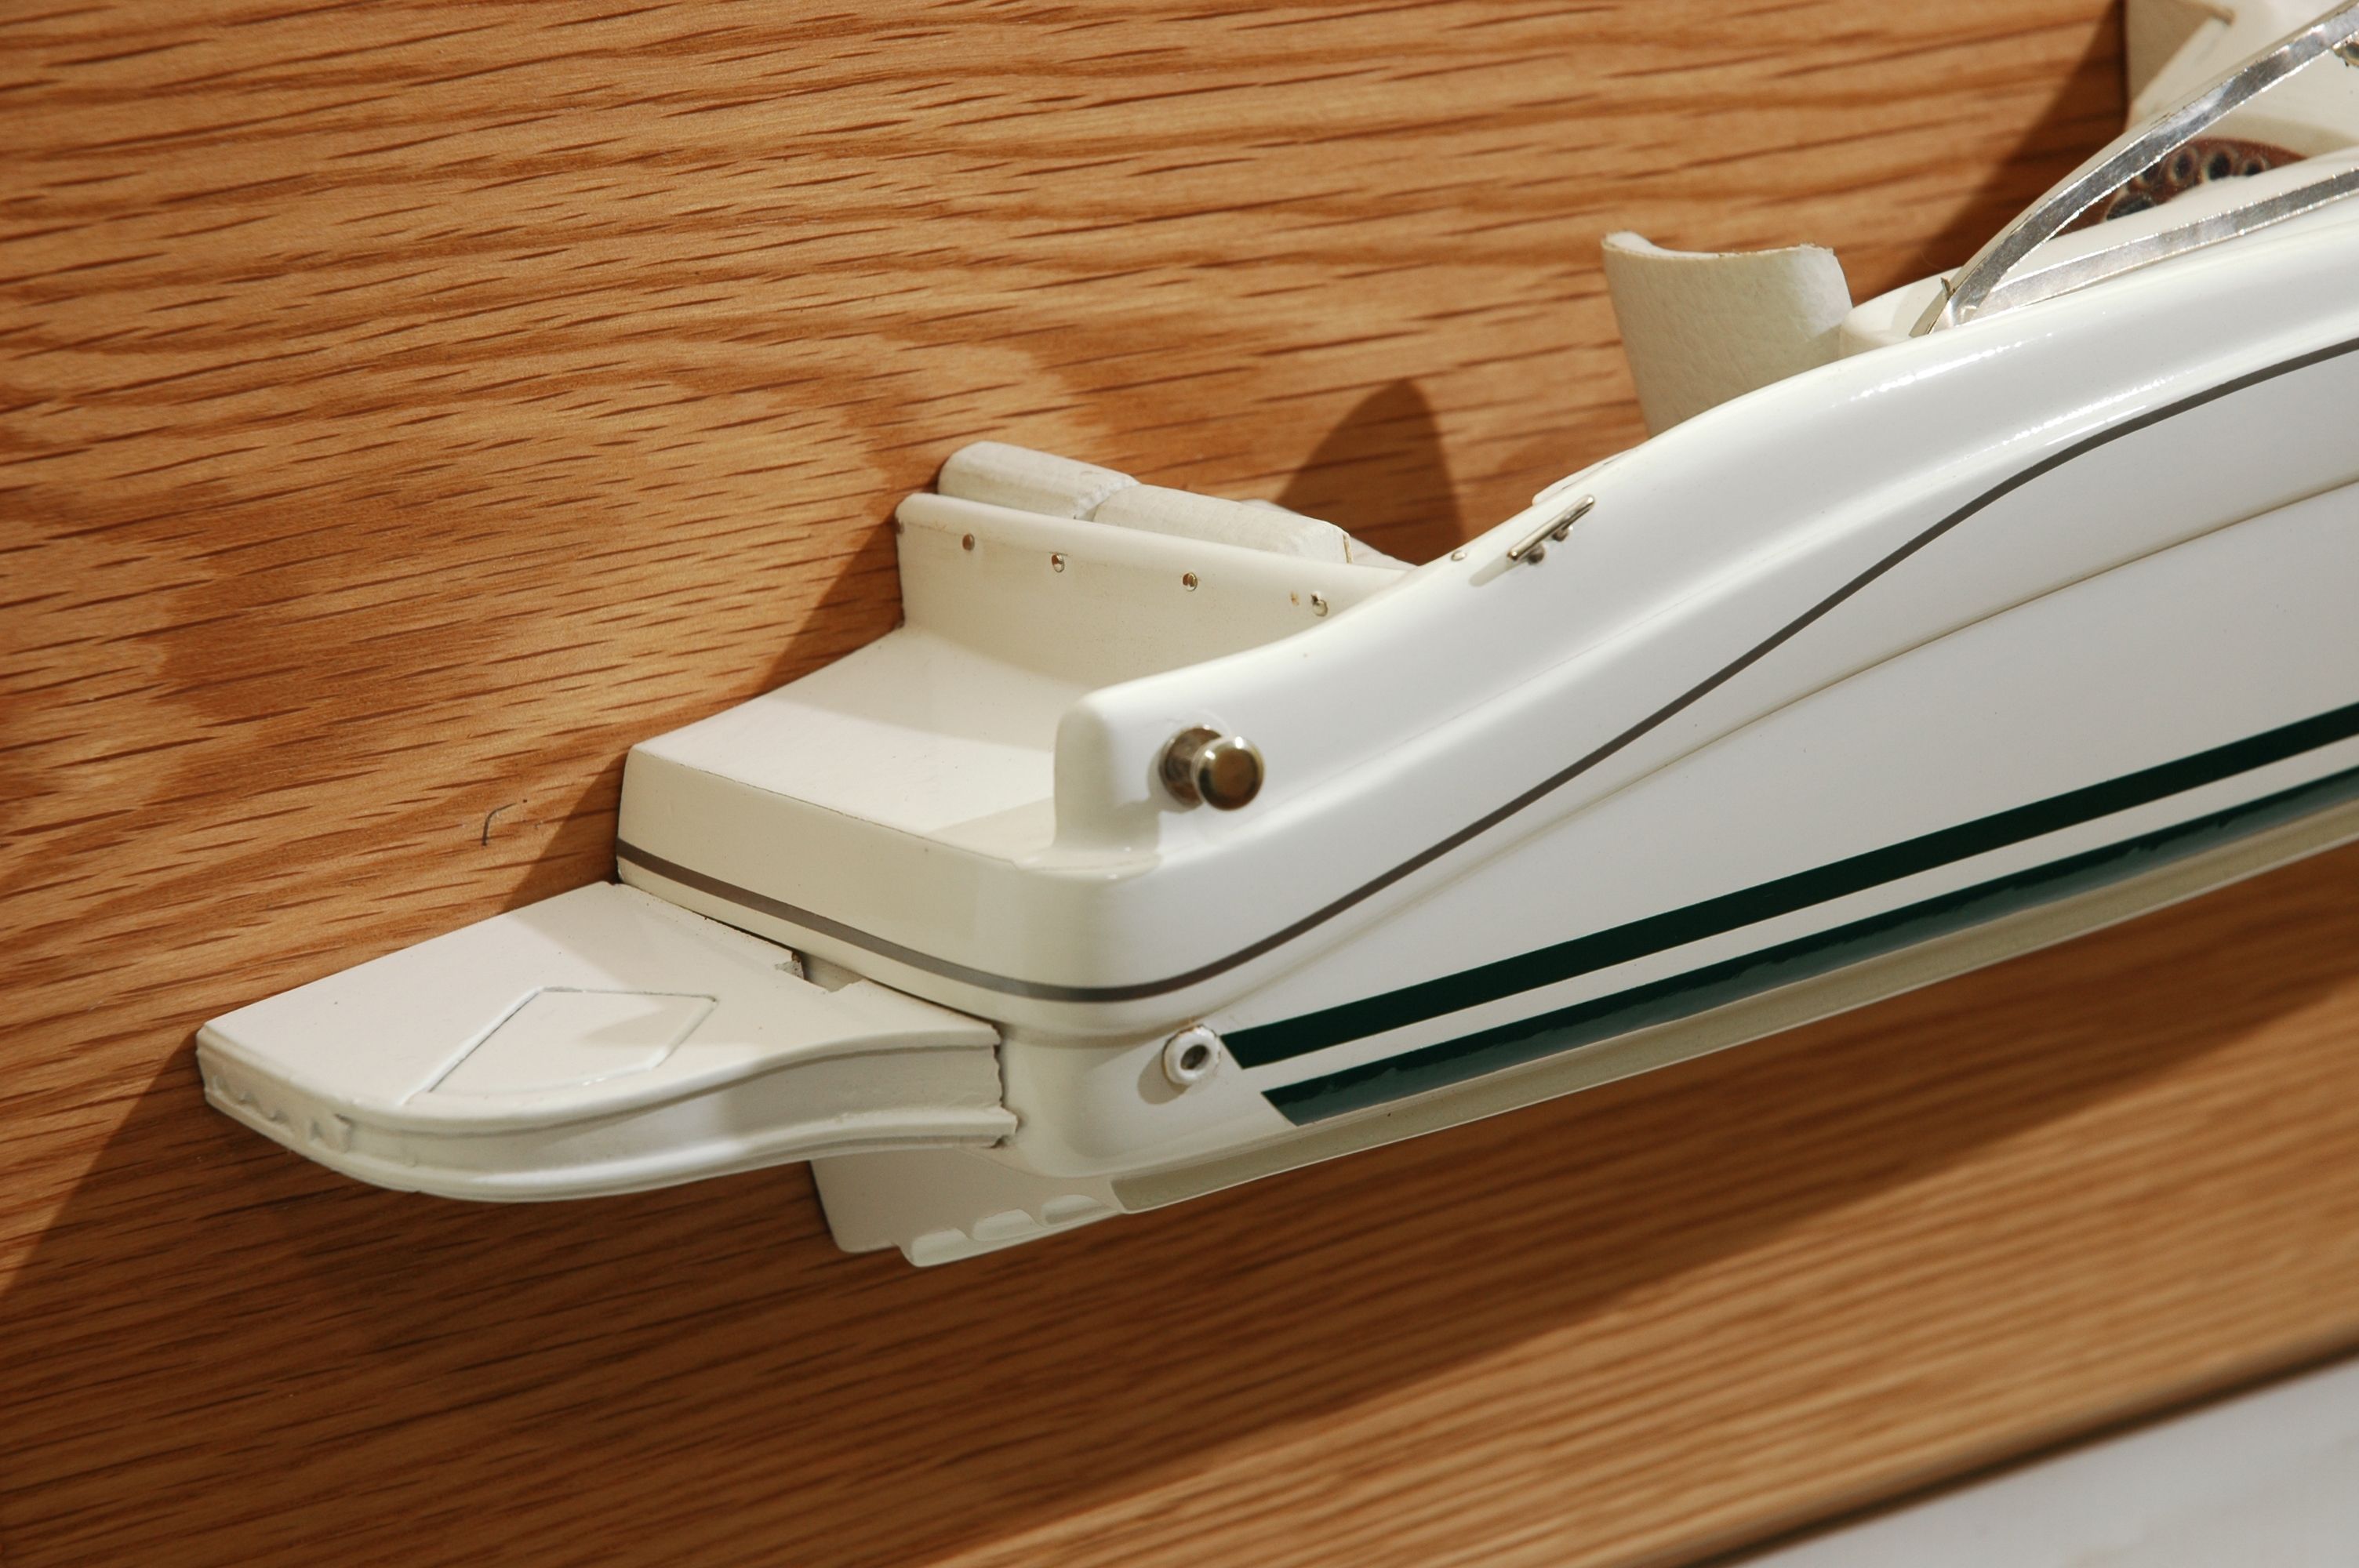 Sea Ray 225 Weekender  (2001) half model